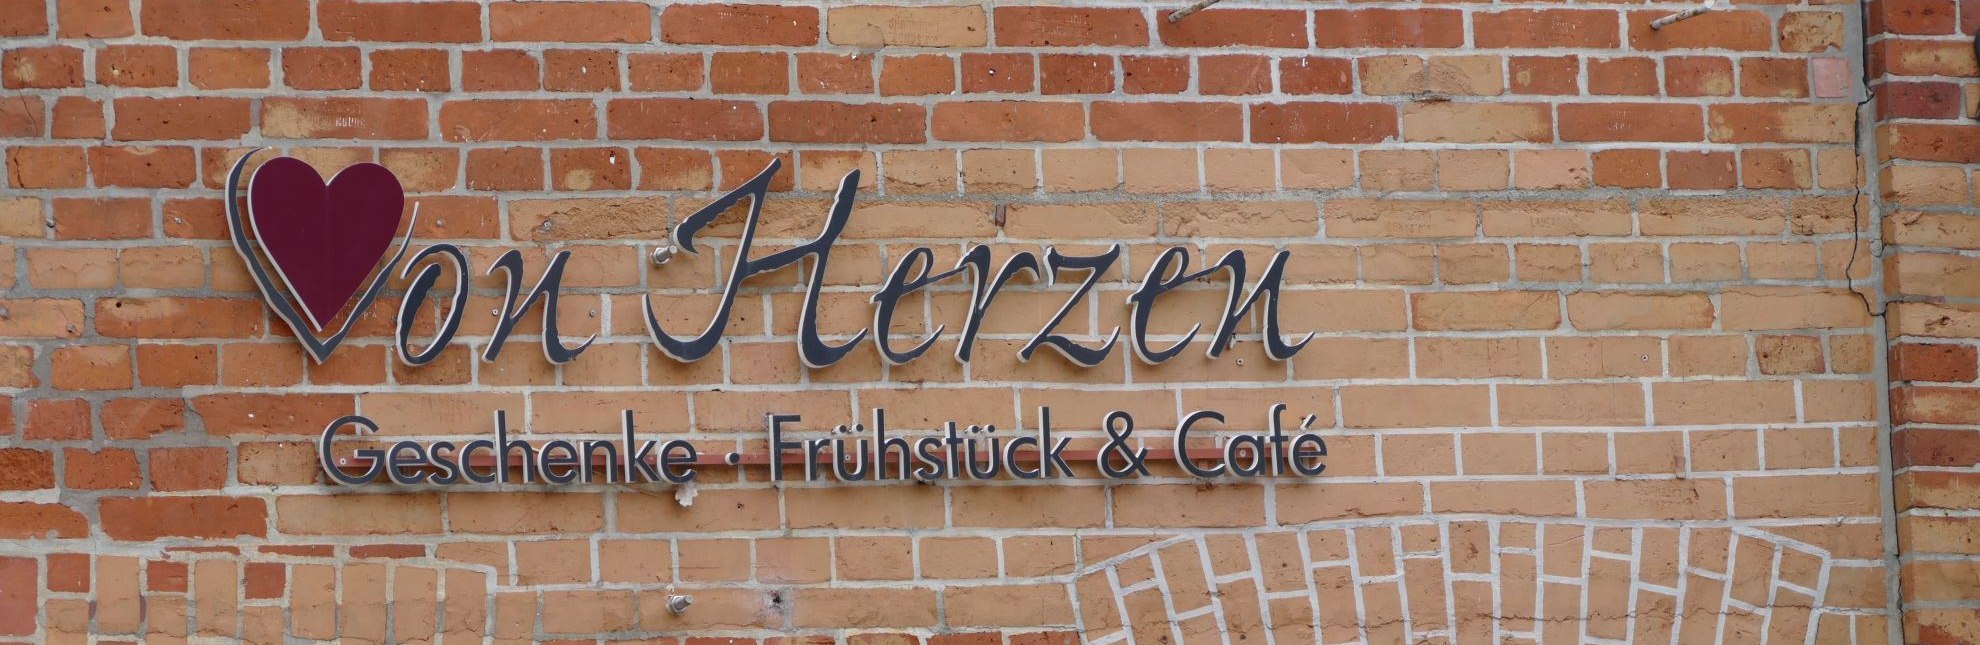 Logo des Café "von Herzen", © Mareike Pöls/Stadt Lauenburg/Elbe